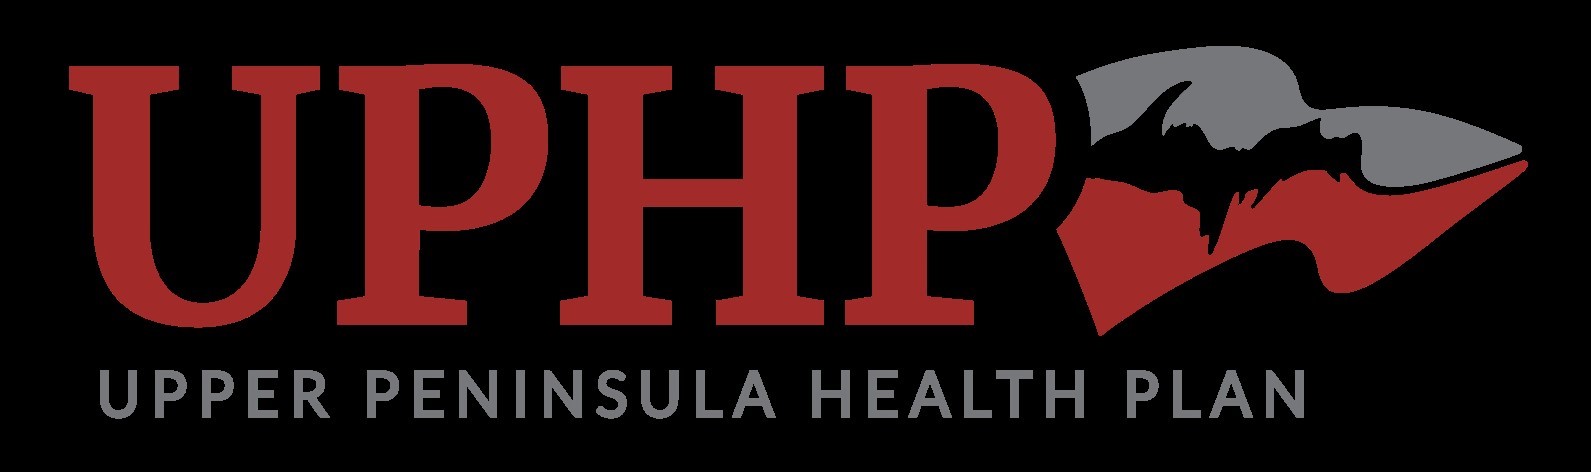 Upper Peninsula Health Plan (Tier 4)